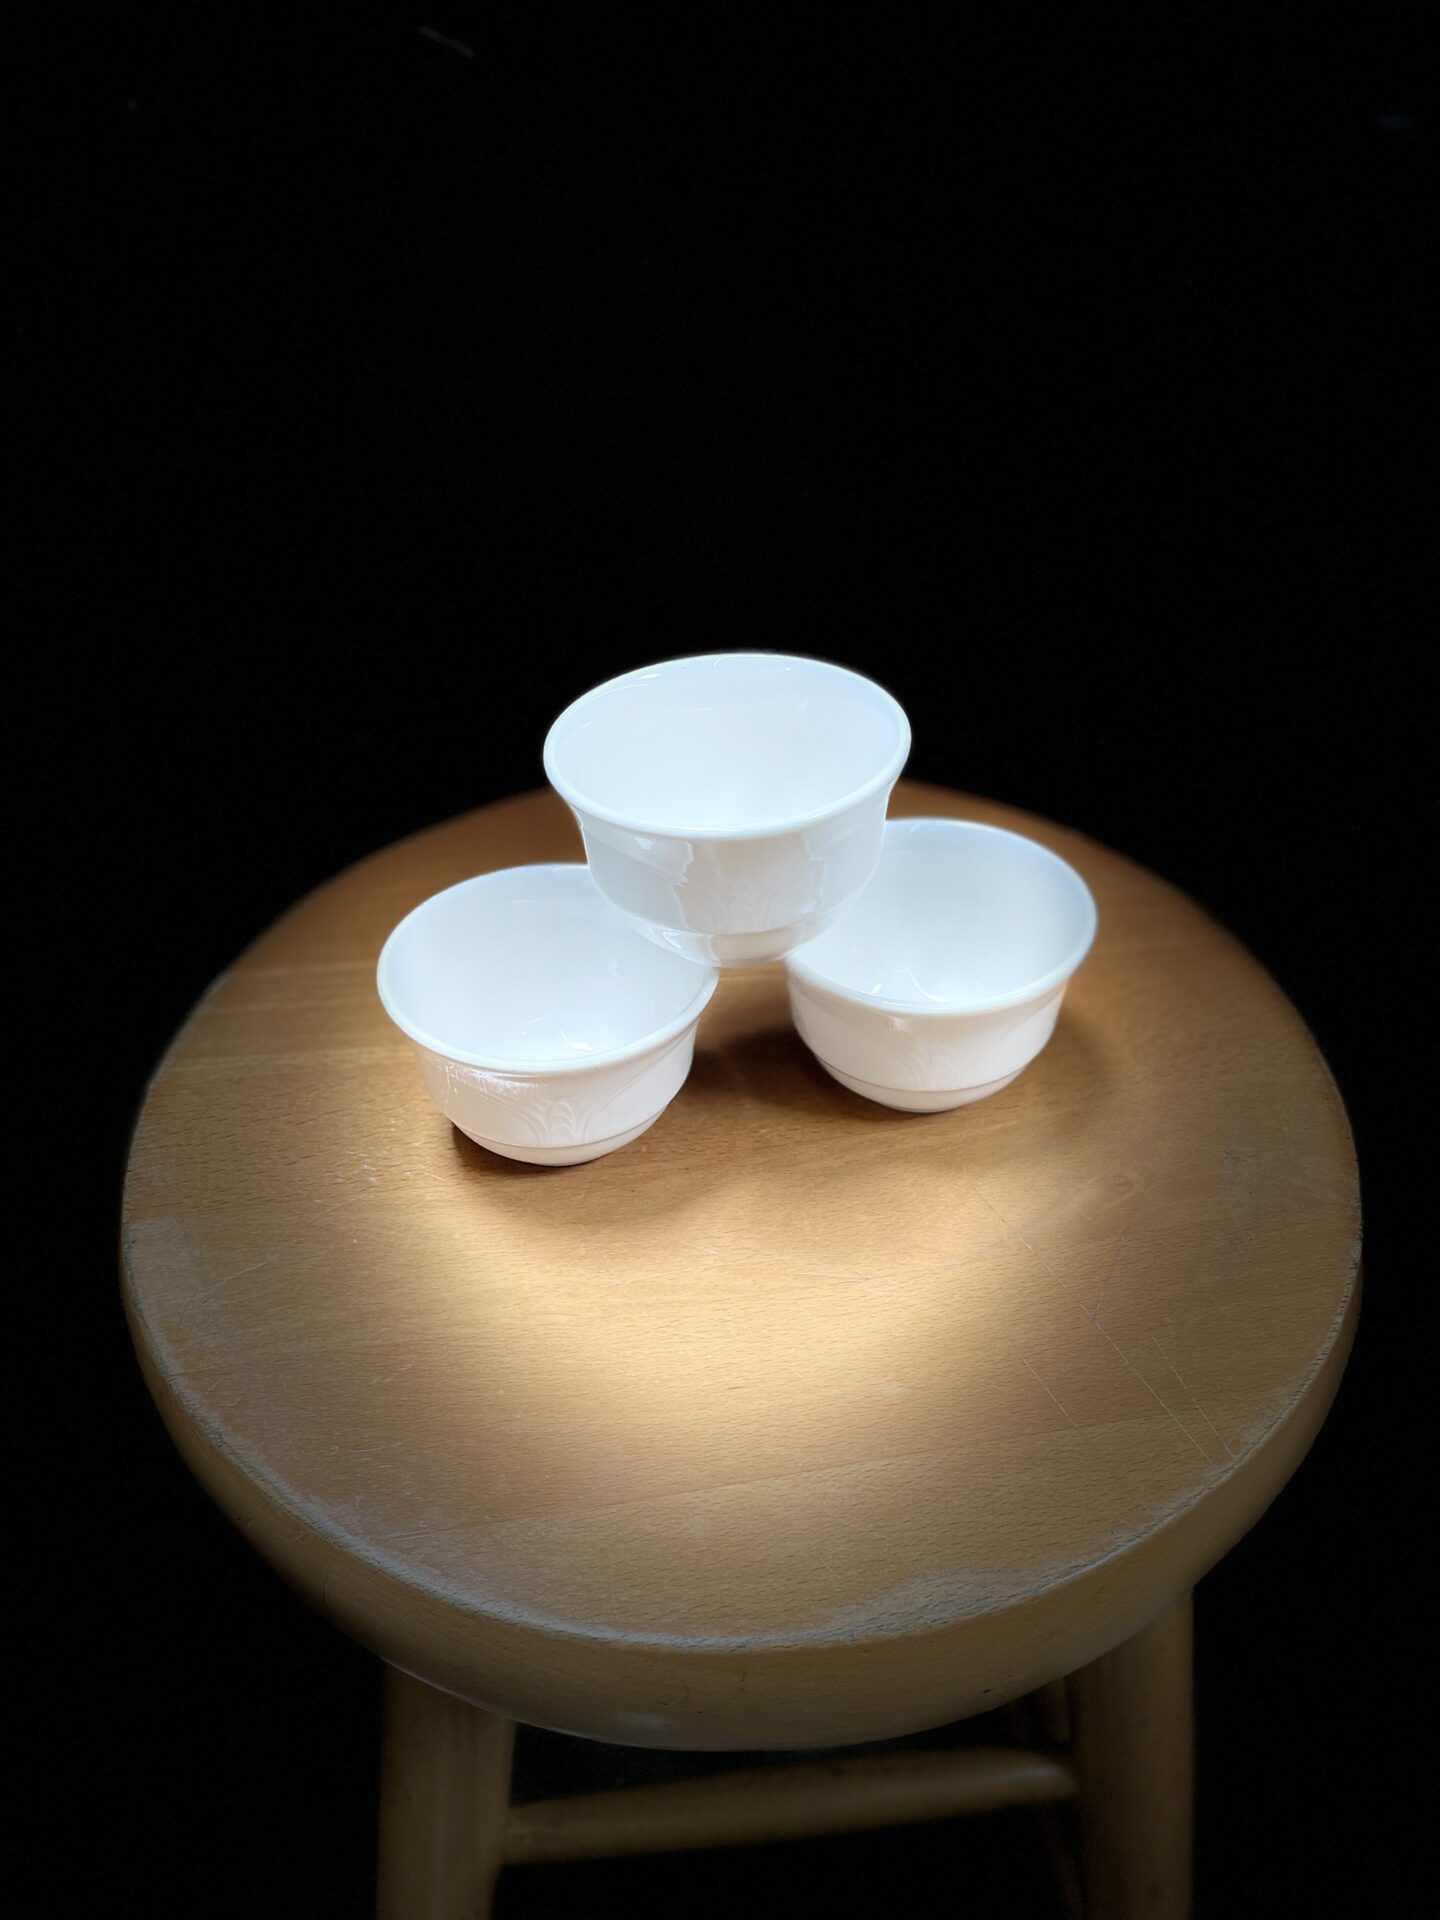 Three white bowls